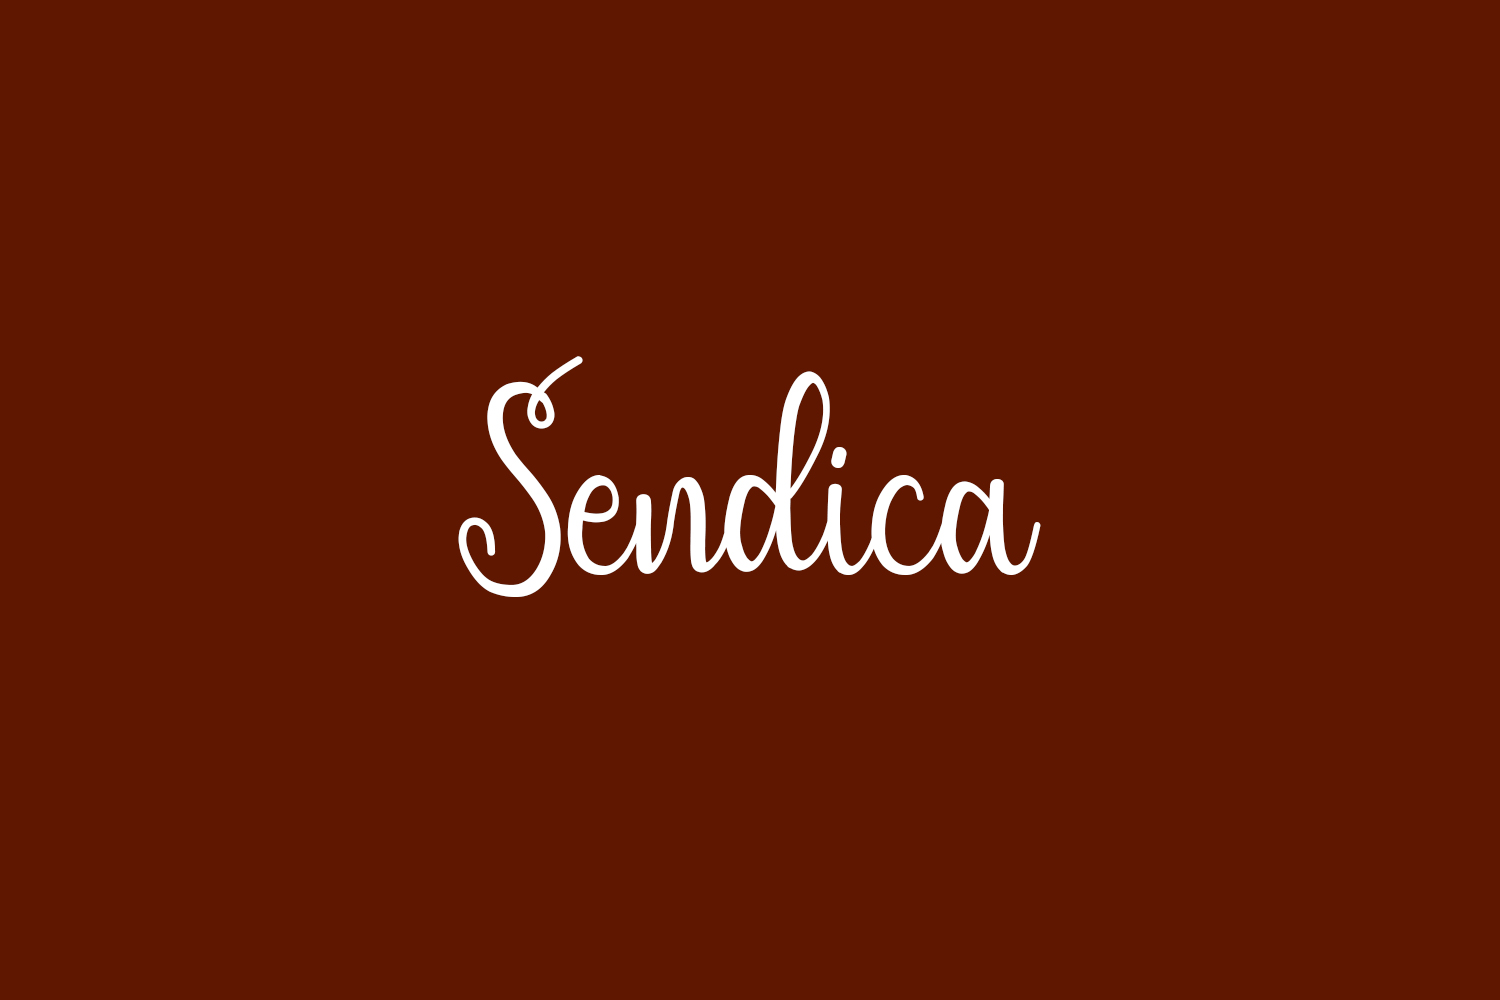 Sendica Free Font